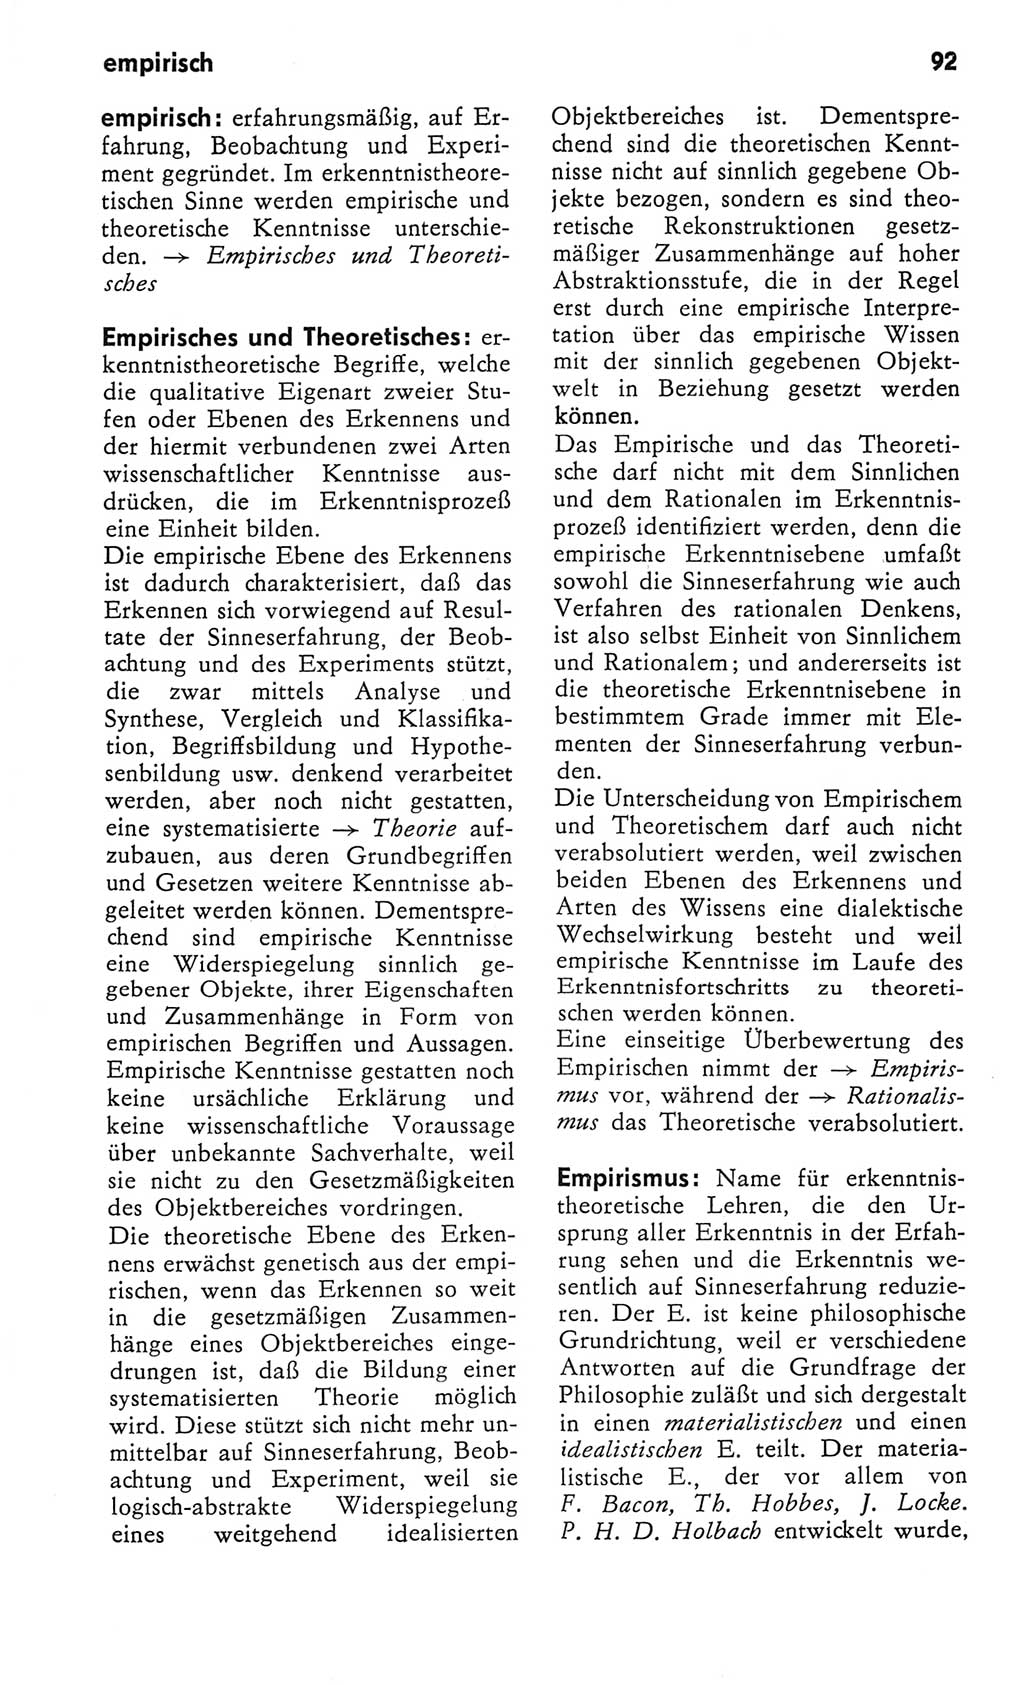 Kleines Wörterbuch der marxistisch-leninistischen Philosophie [Deutsche Demokratische Republik (DDR)] 1982, Seite 92 (Kl. Wb. ML Phil. DDR 1982, S. 92)